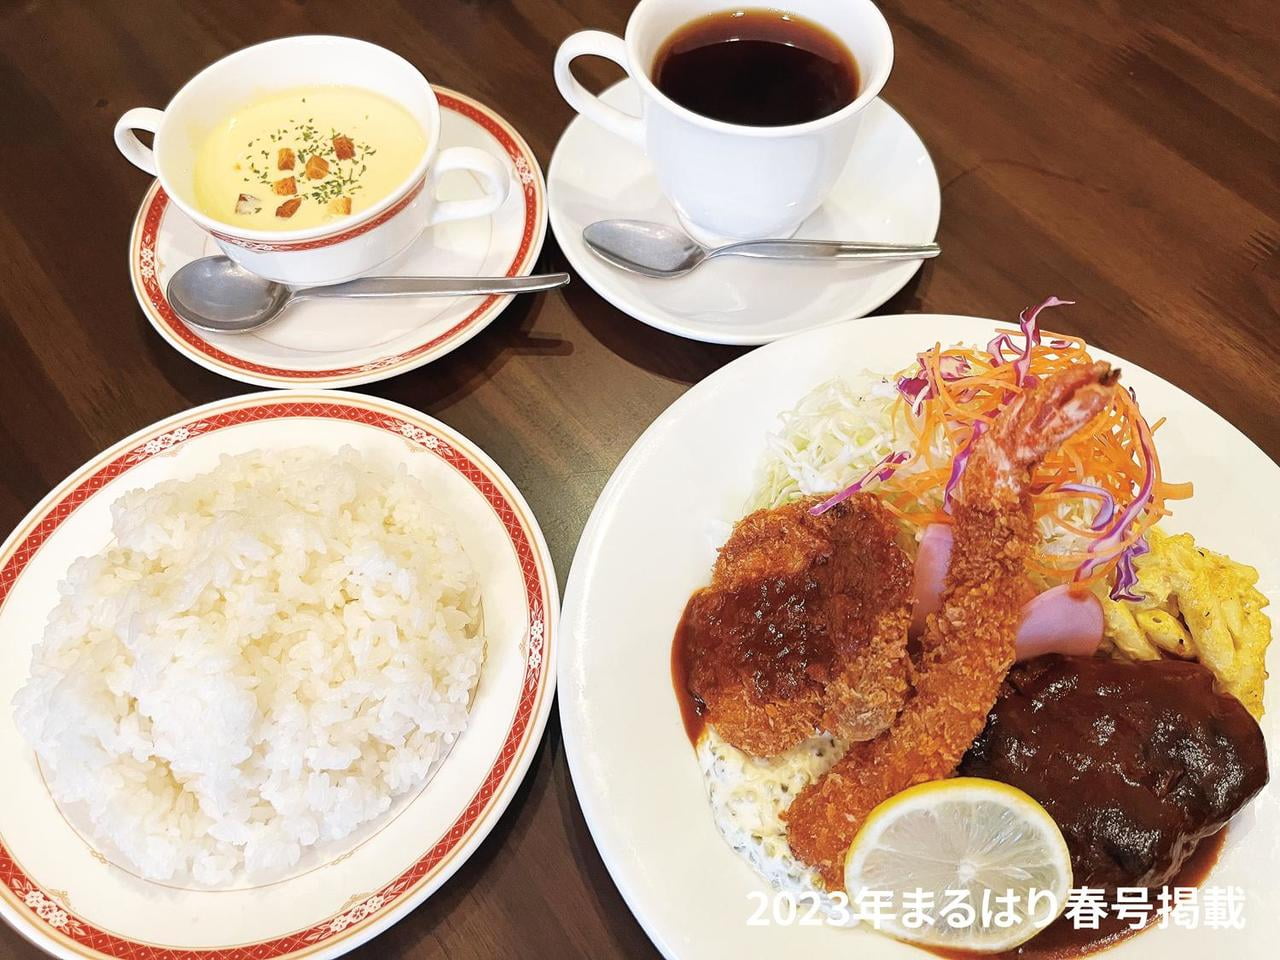 【姫路】豊富なモーニング・ランチが魅力「福乃喫茶店」大満足の食事で毎日行きたくなるお店